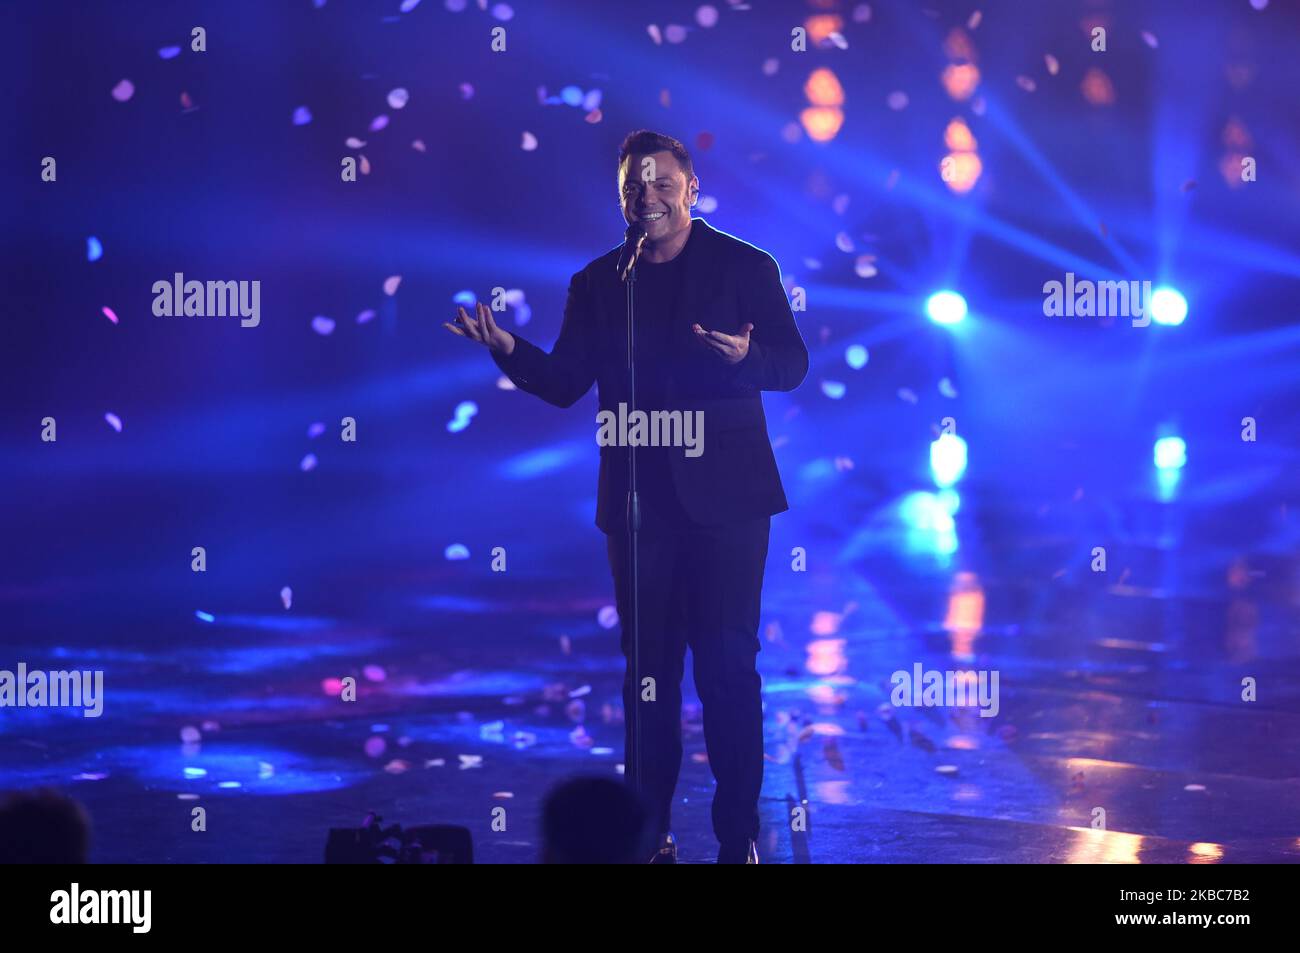 La chanteuse italienne Tiziano Ferro chante lors de l'édition italienne semi-finale du programme international de télévision X Factor, en dôme X Factor, à Monza, en Italie (photo par Andrea Diodato/NurPhoto) Banque D'Images